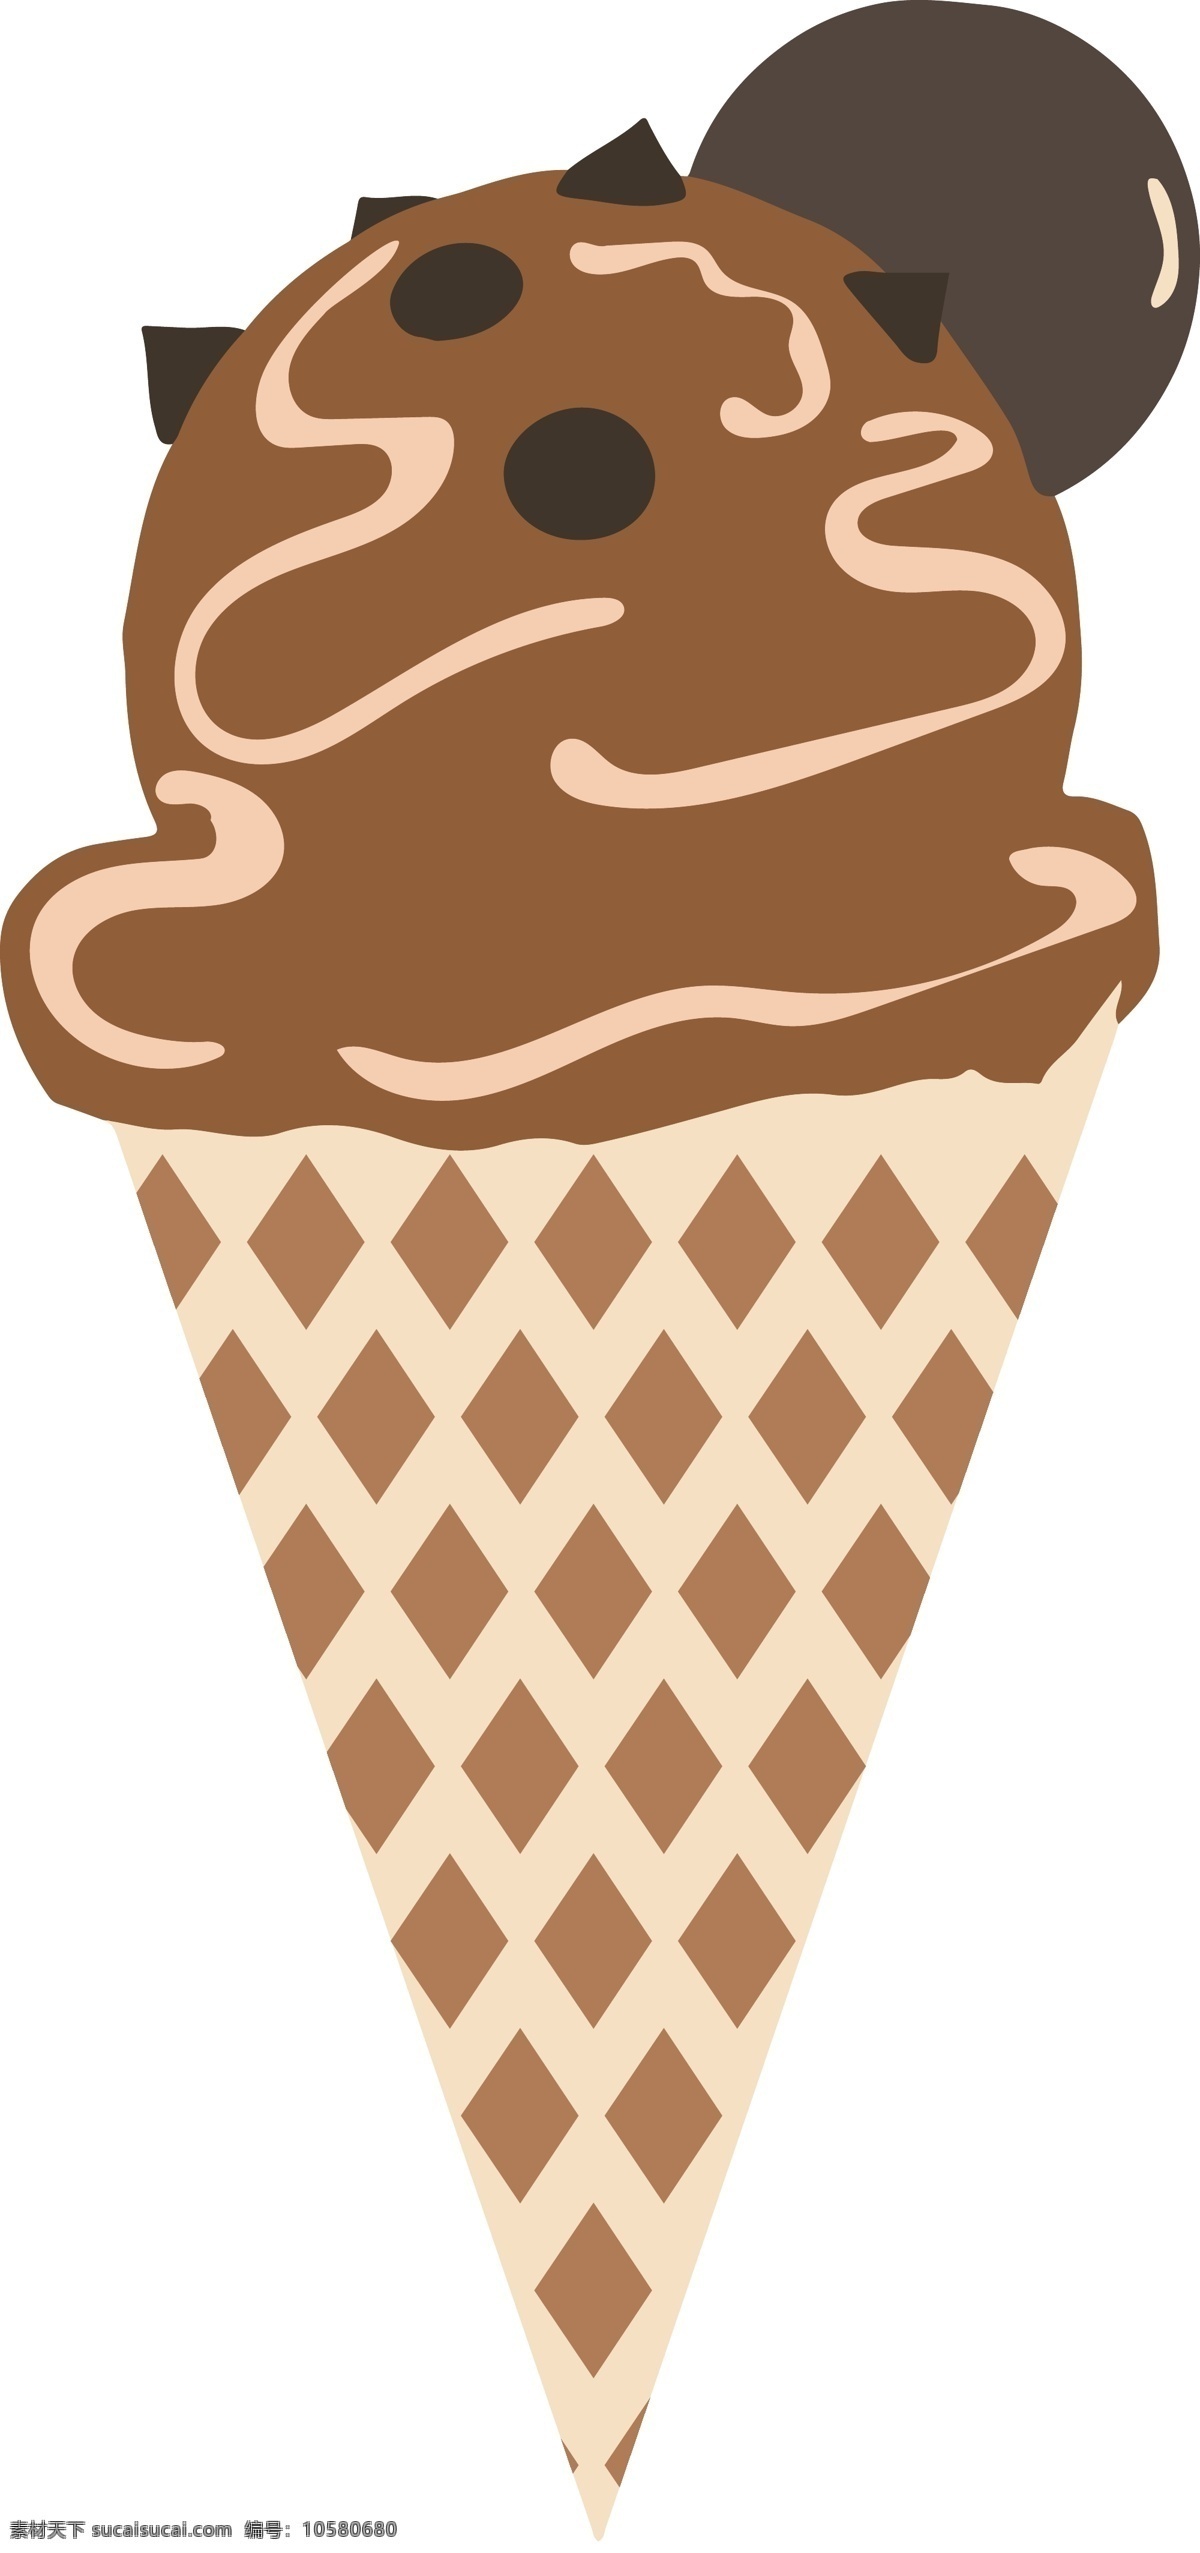 夏日 卡通 冰淇淋 图形 商用 元素 清凉 食物 甜筒 夏日冰淇淋 解暑